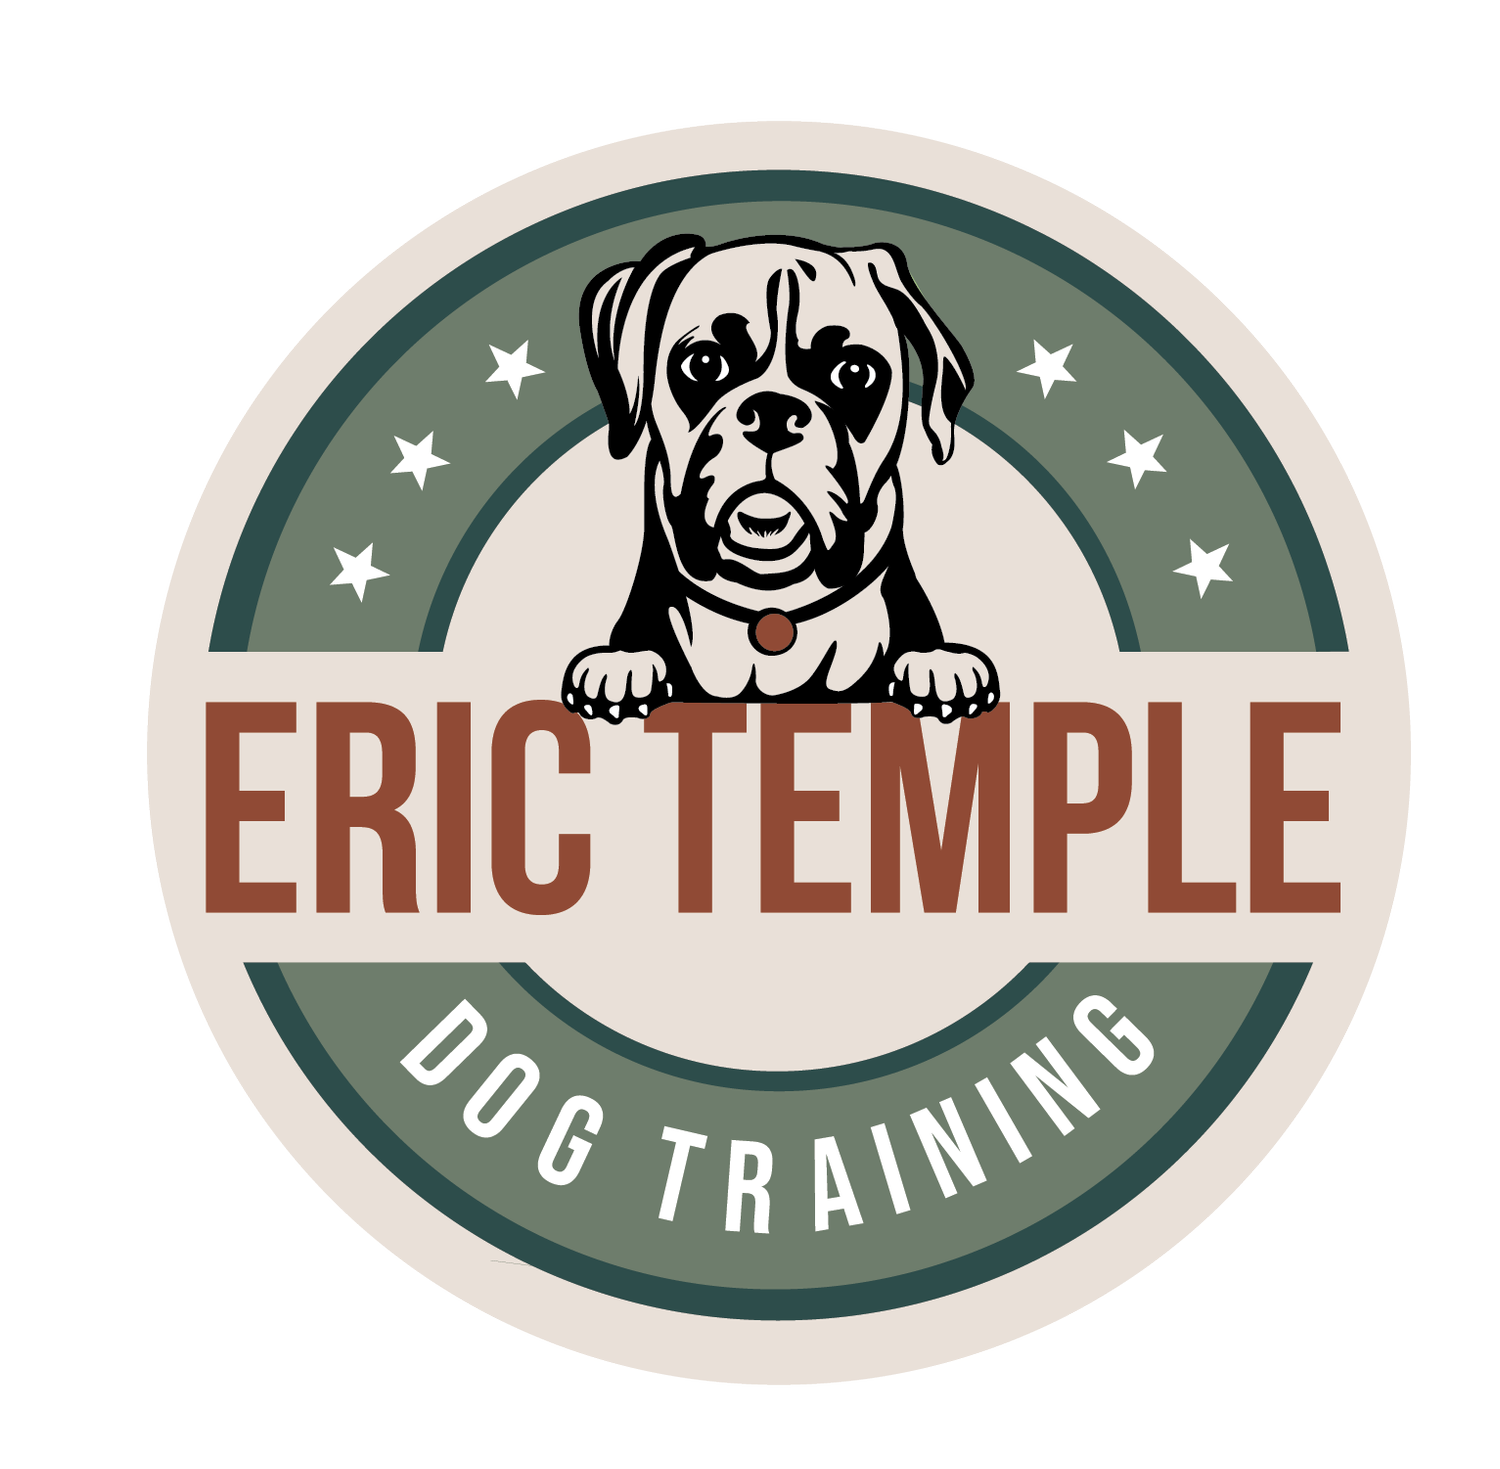 Eric Temple Dog Training